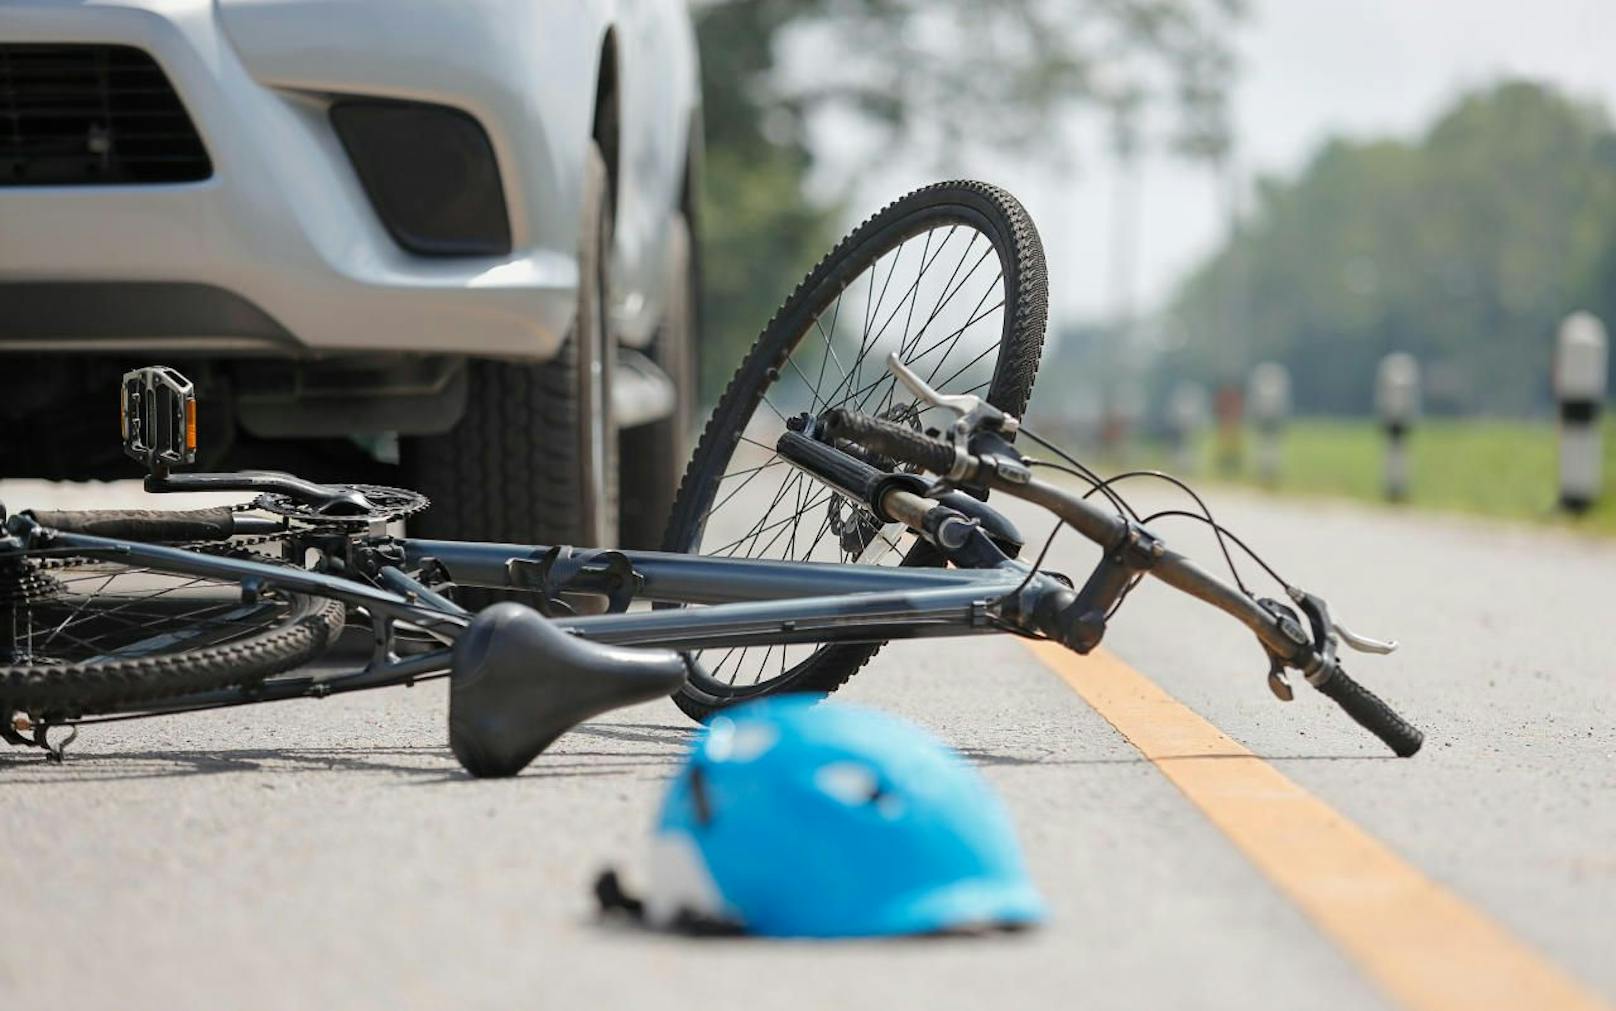 Bei einem Zusammenstoß am Samstag wurde in Wien ein Radfahrer lebensgefährlich verletzt. (Symbolbild)